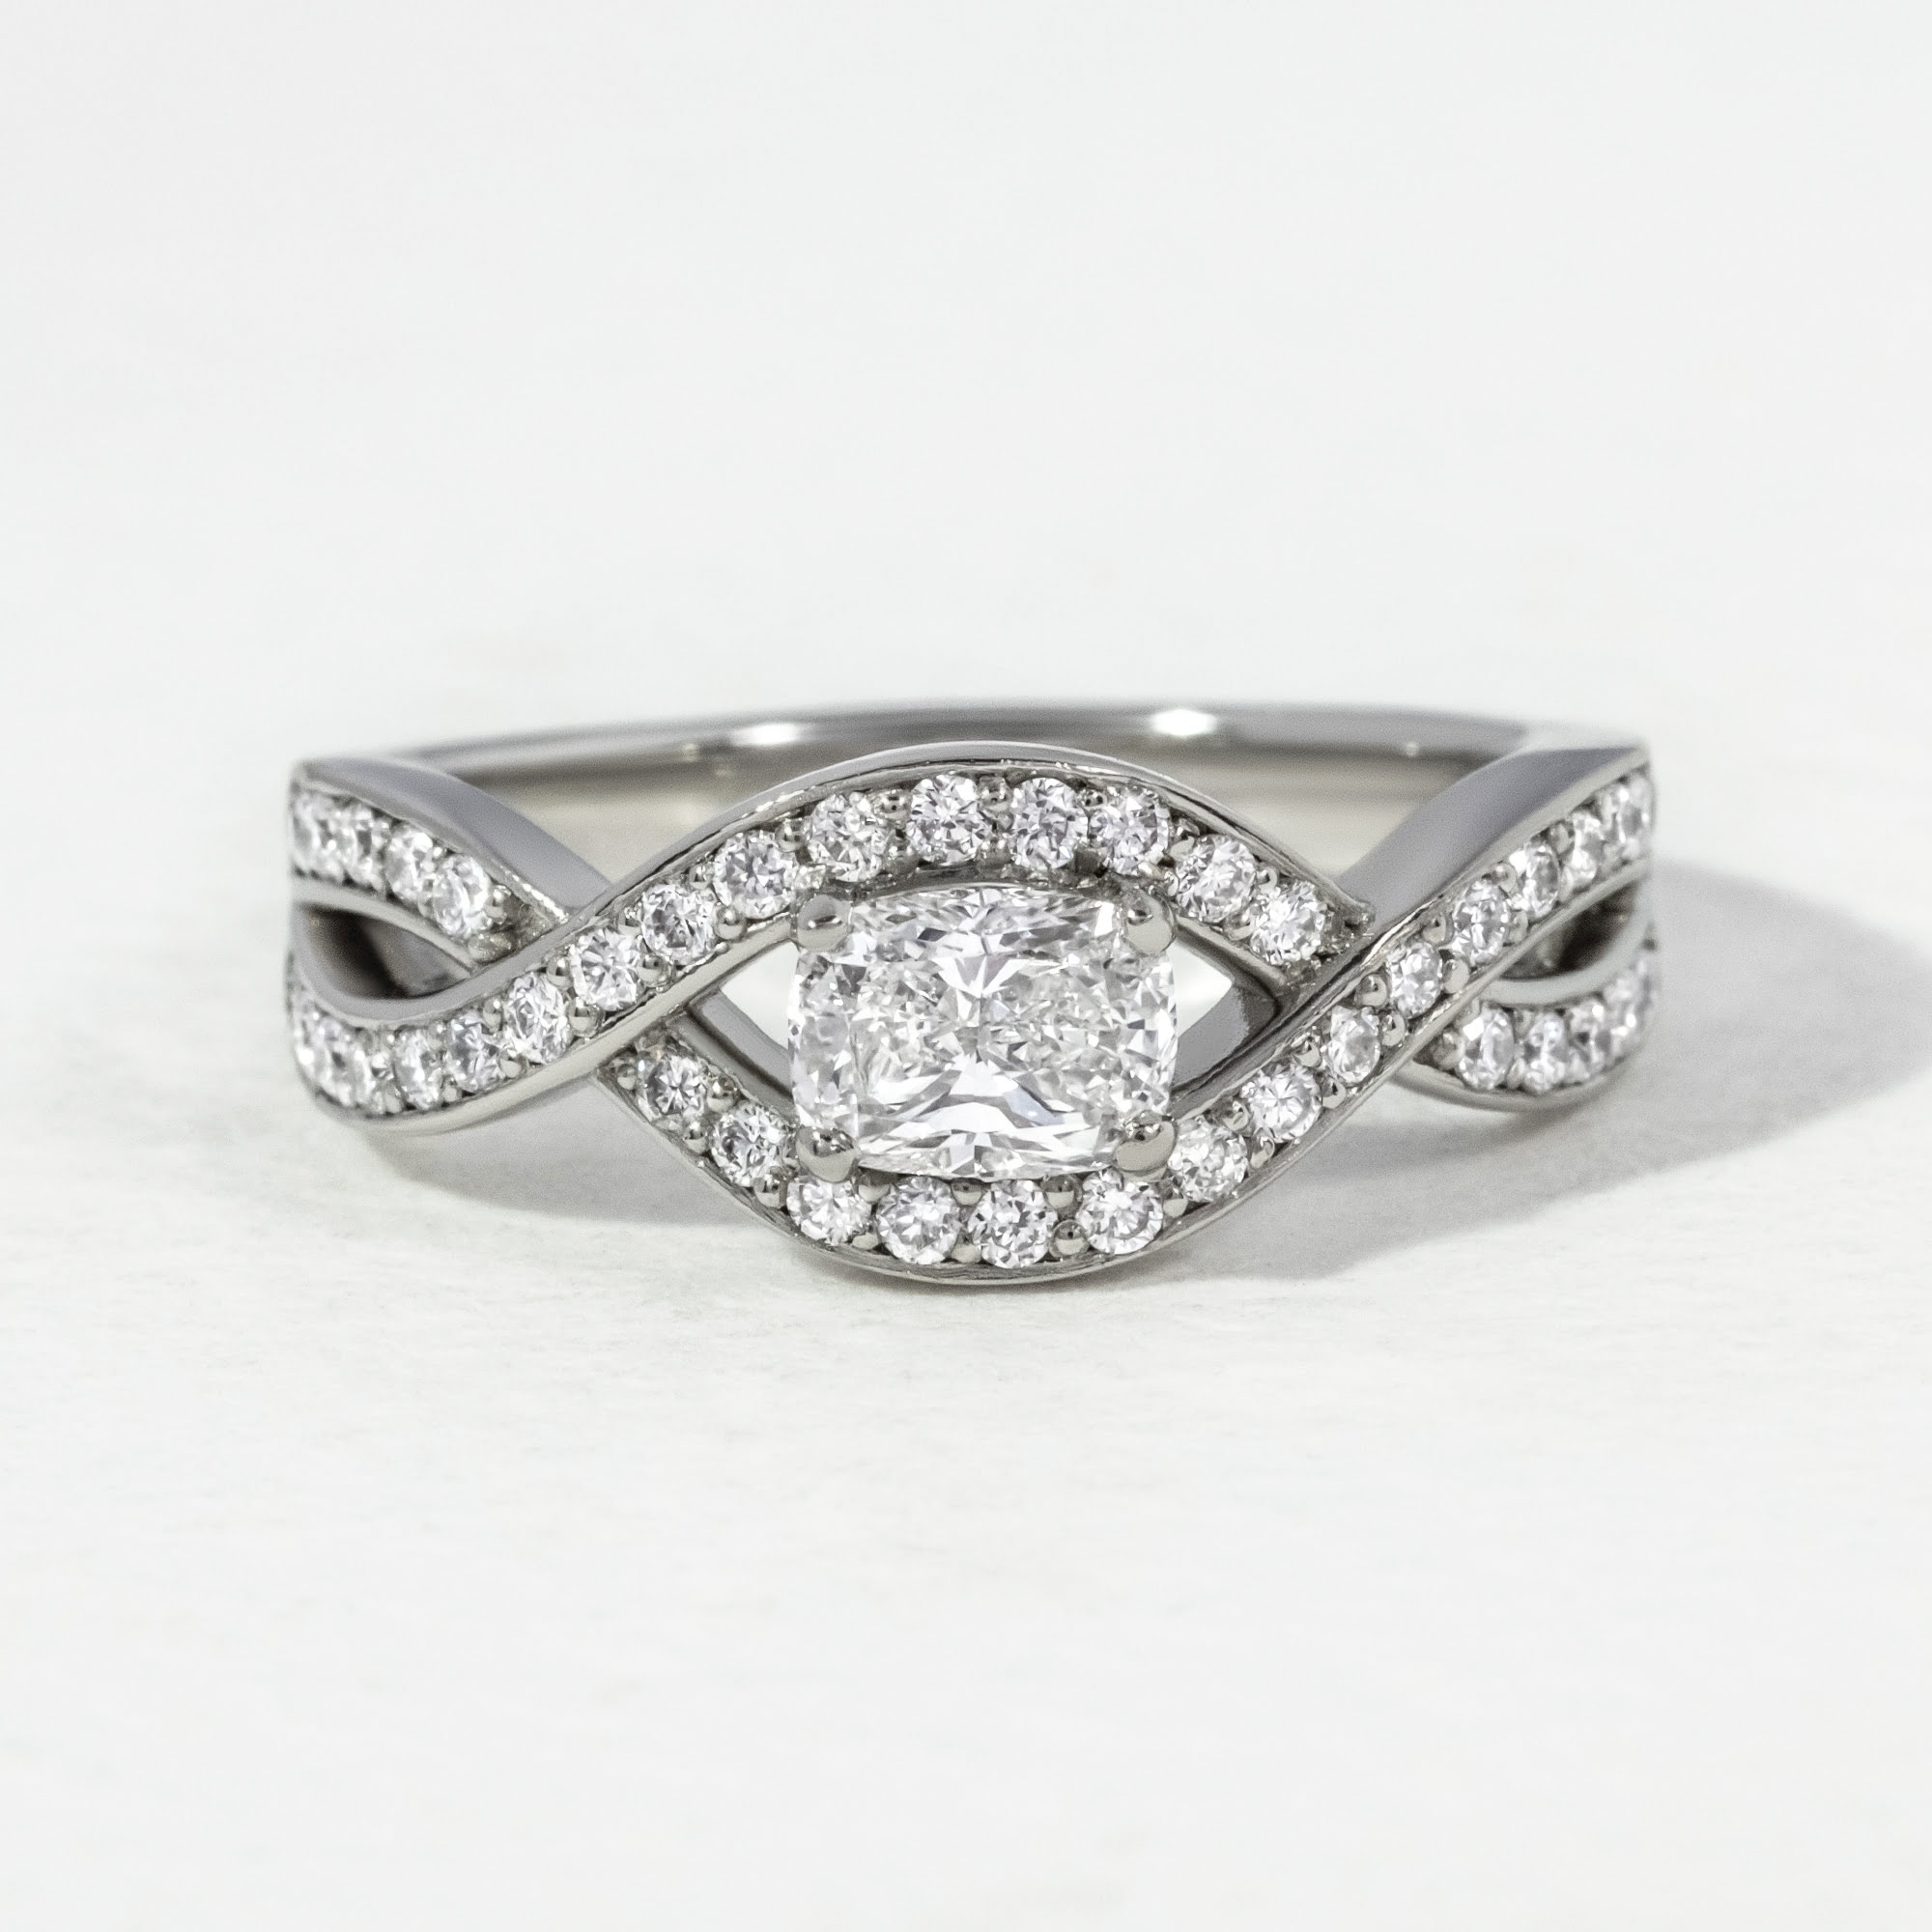 Cushion Platinum Entwined Halo Diamond Engagement Ring 0.51ct